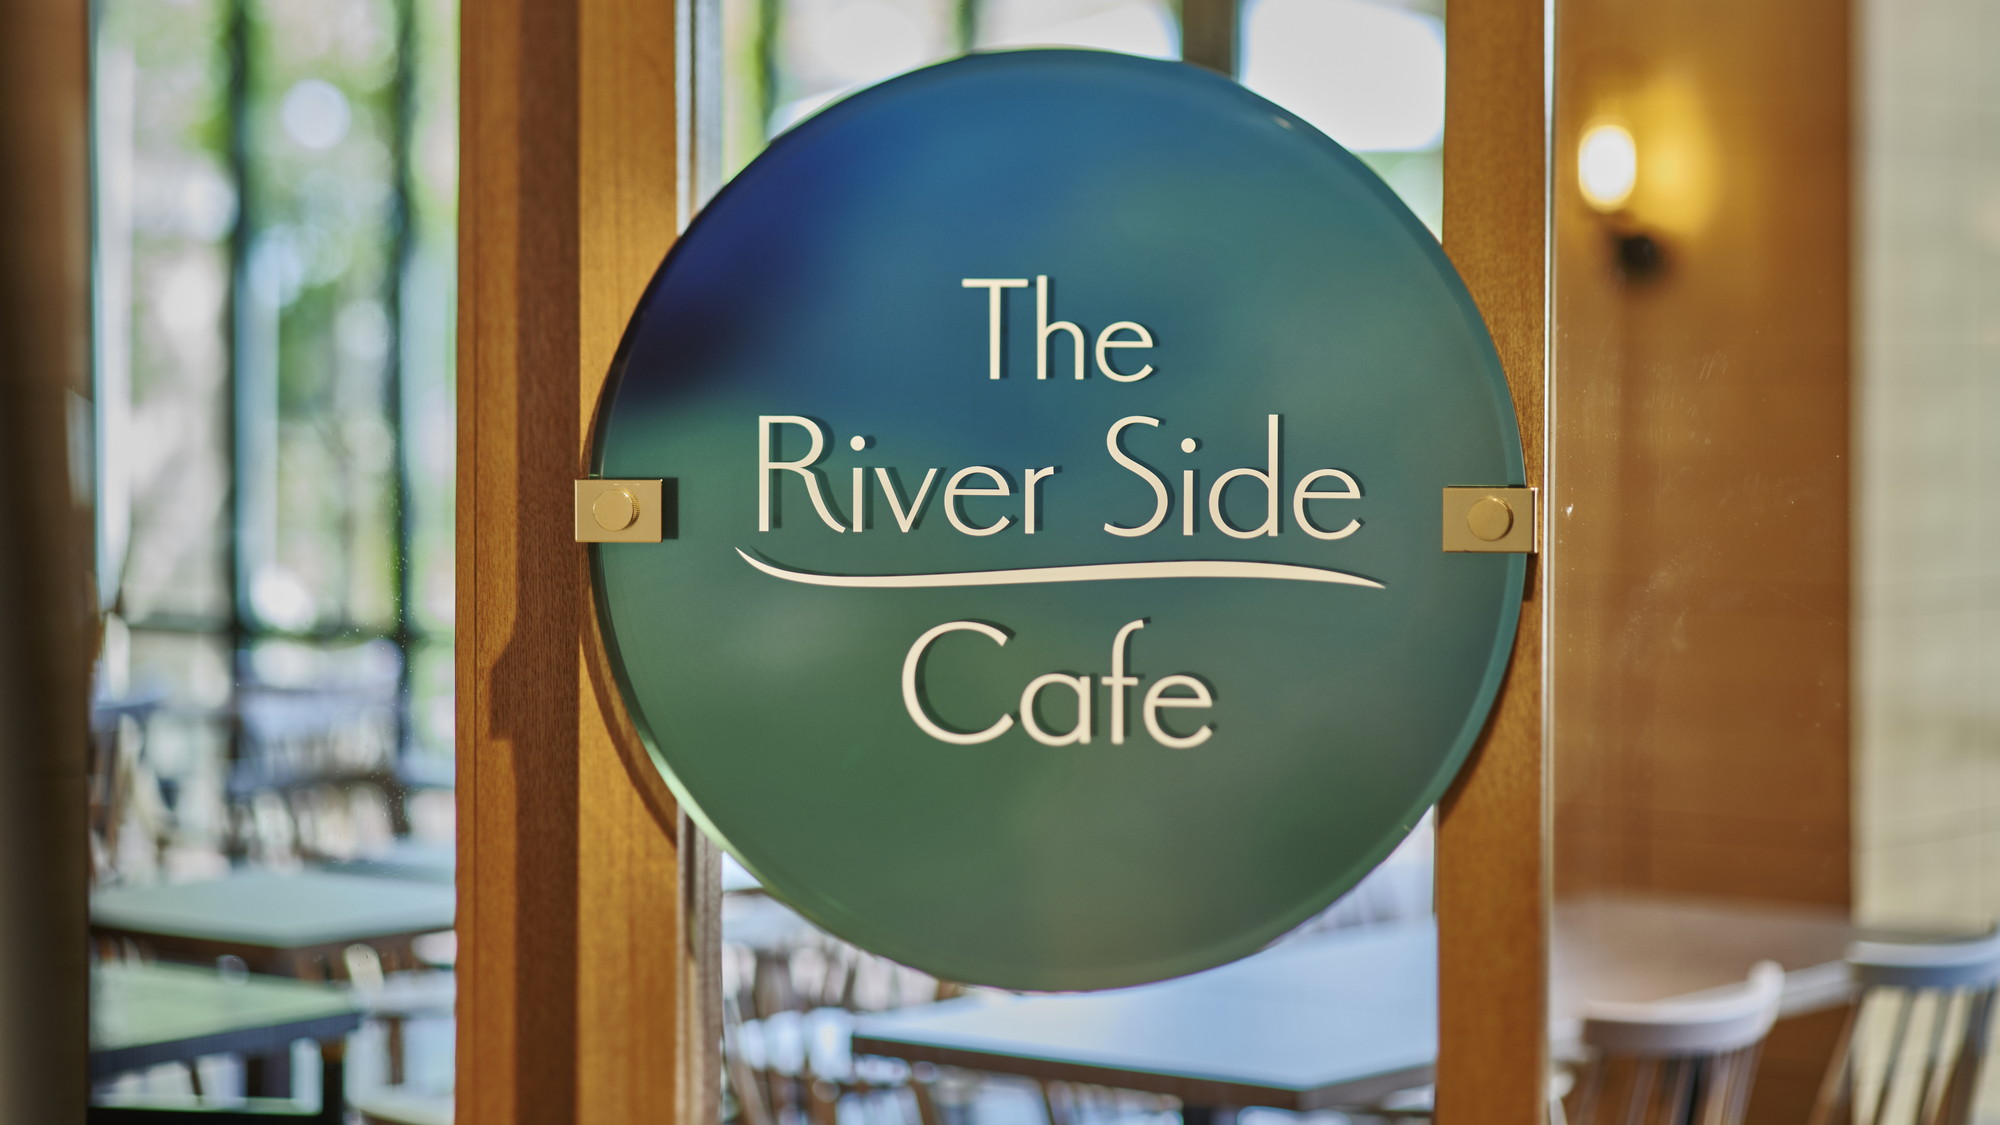 ホテル1F レストラン「The River Side Cafe」